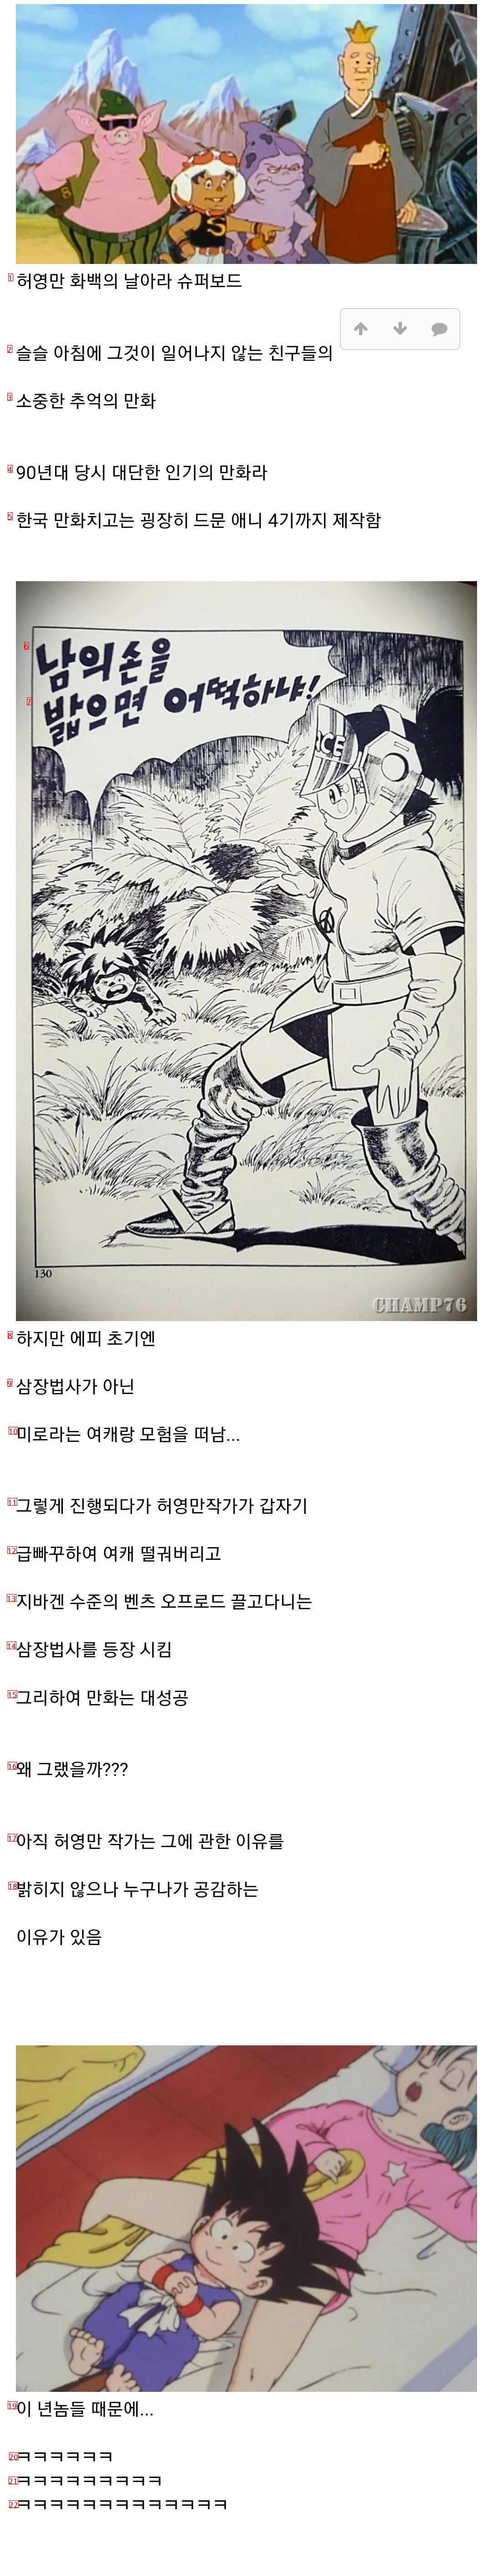 작가가 급빠꾸해서 대박난 한국 만화